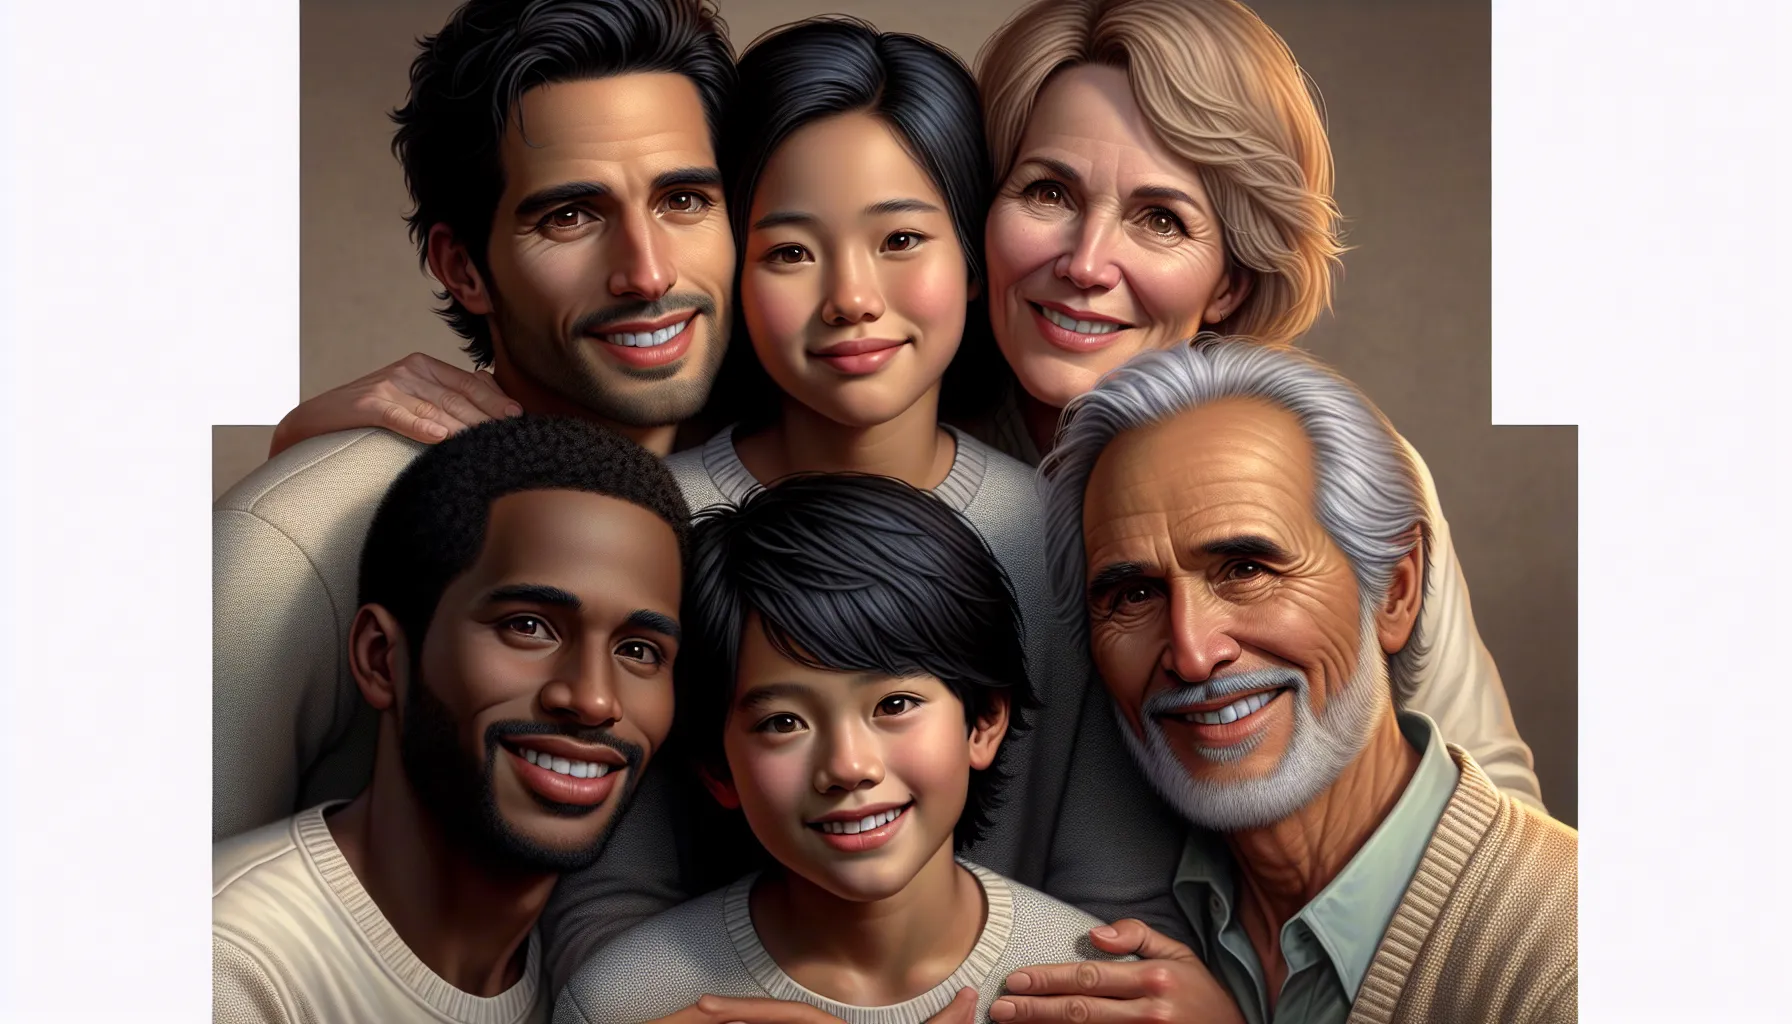 'Imagen de una familia abrazándose y sonriendo, representando el amor y respeto filial enseñado en la Biblia'.